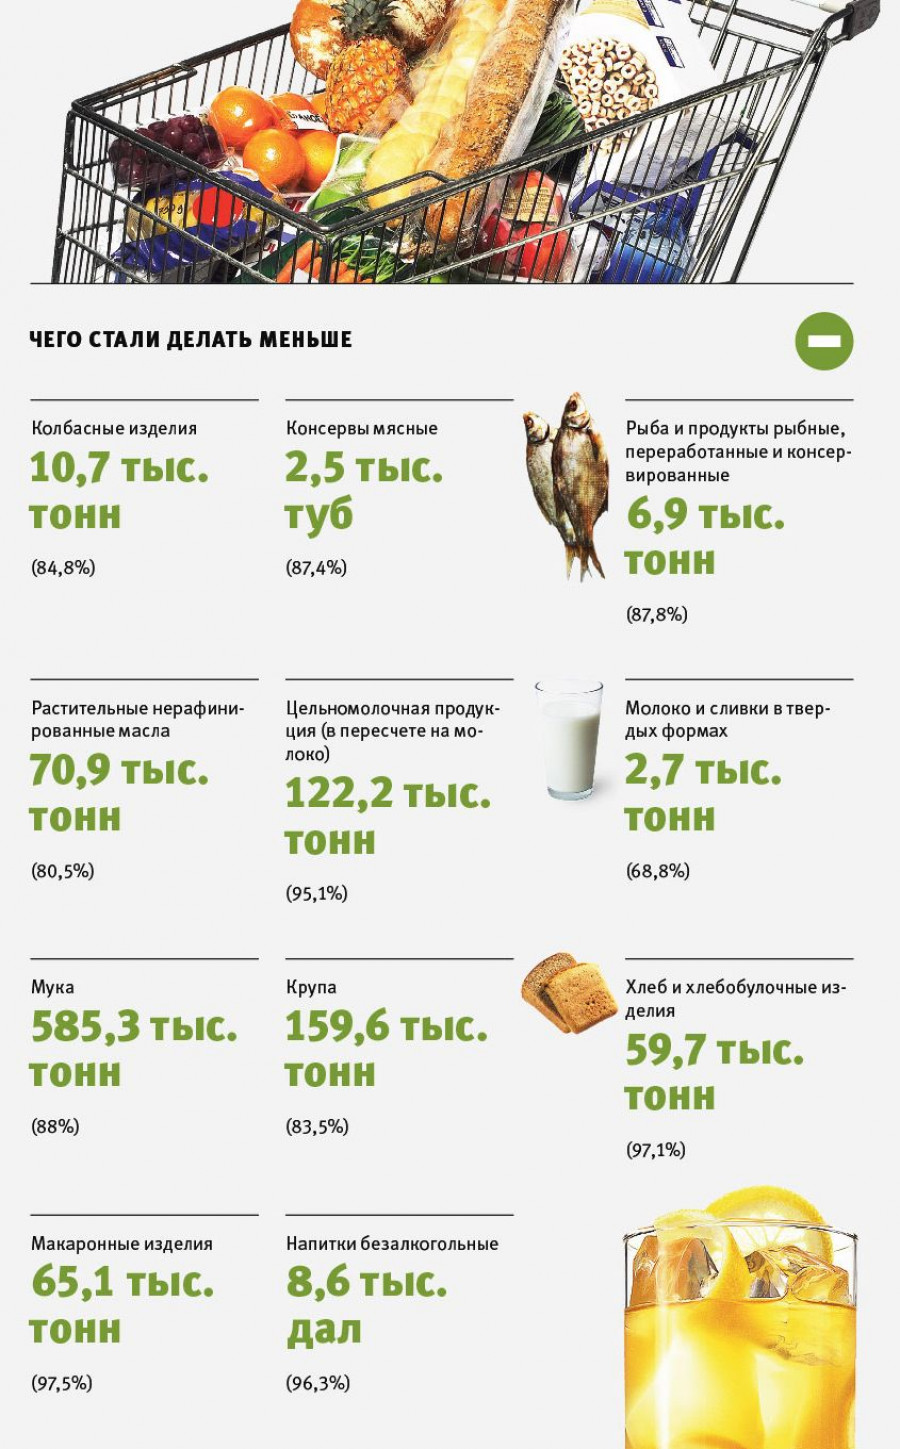 Объемы производства пищевых продуктов за январь-июль 2015 года.